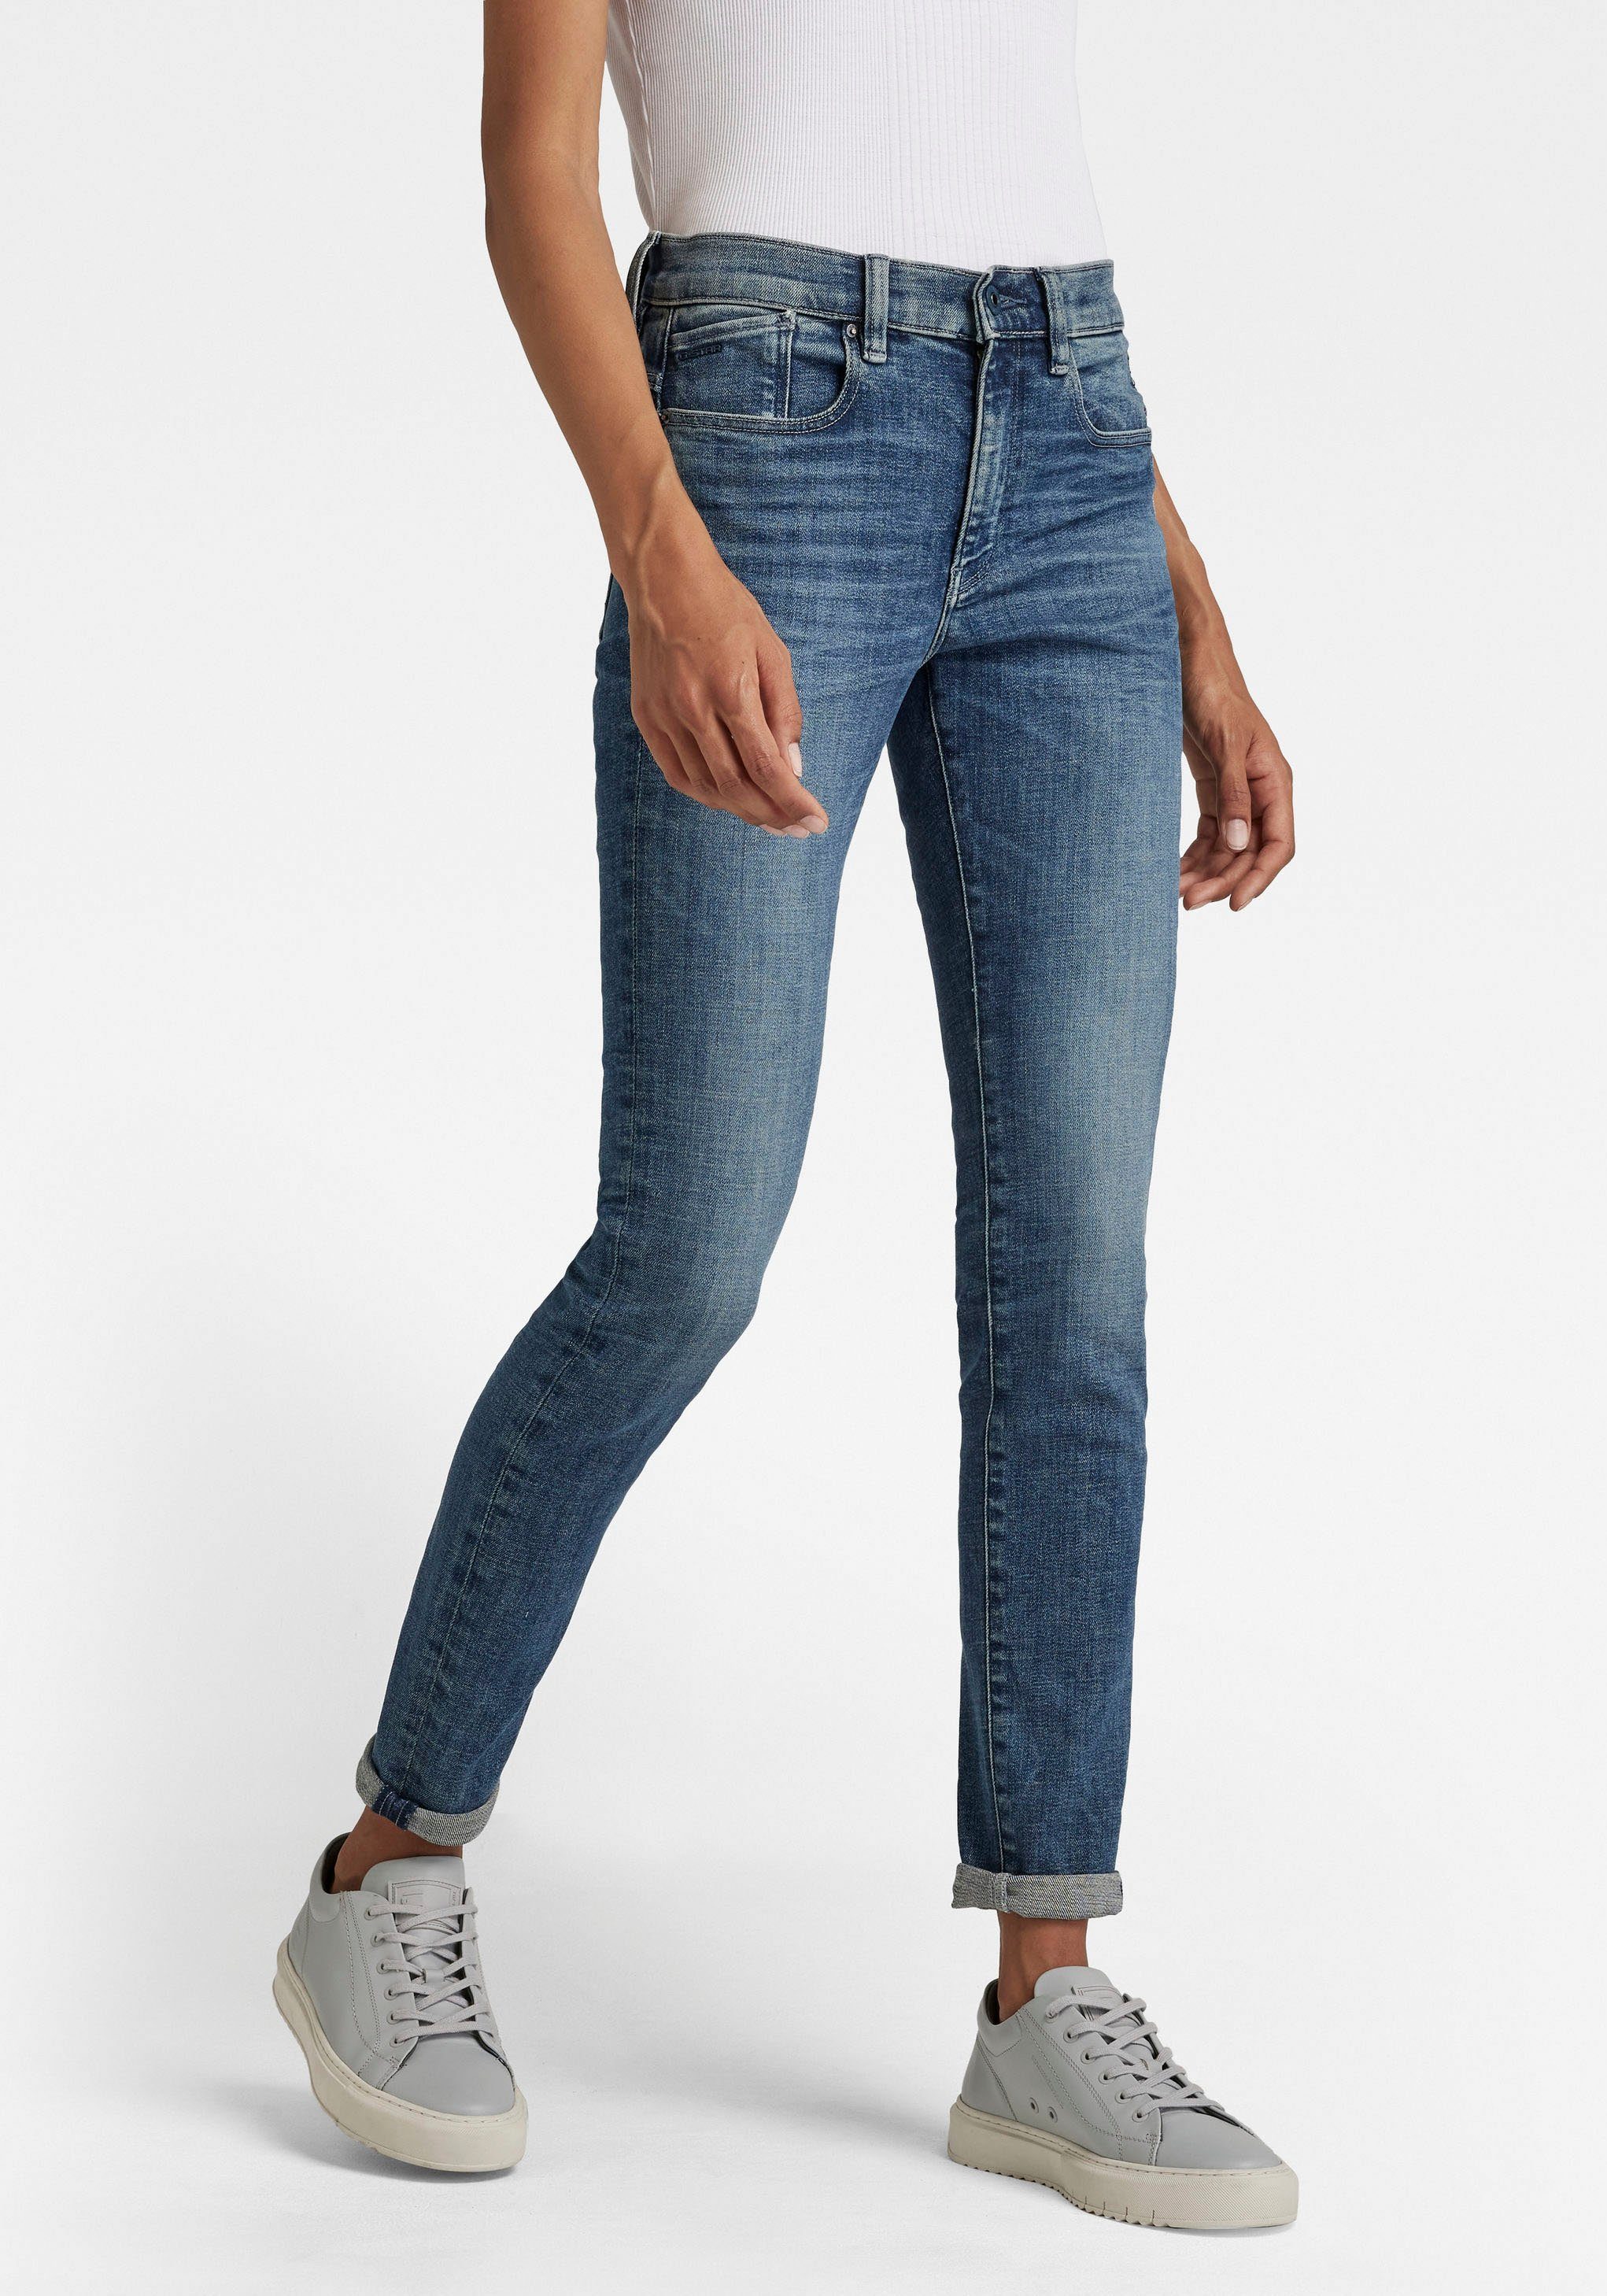 G-Star RAW Skinny-fit-Jeans »Lhana« mit Wohlfühlfaktor durch Stretchanteil  online kaufen | OTTO